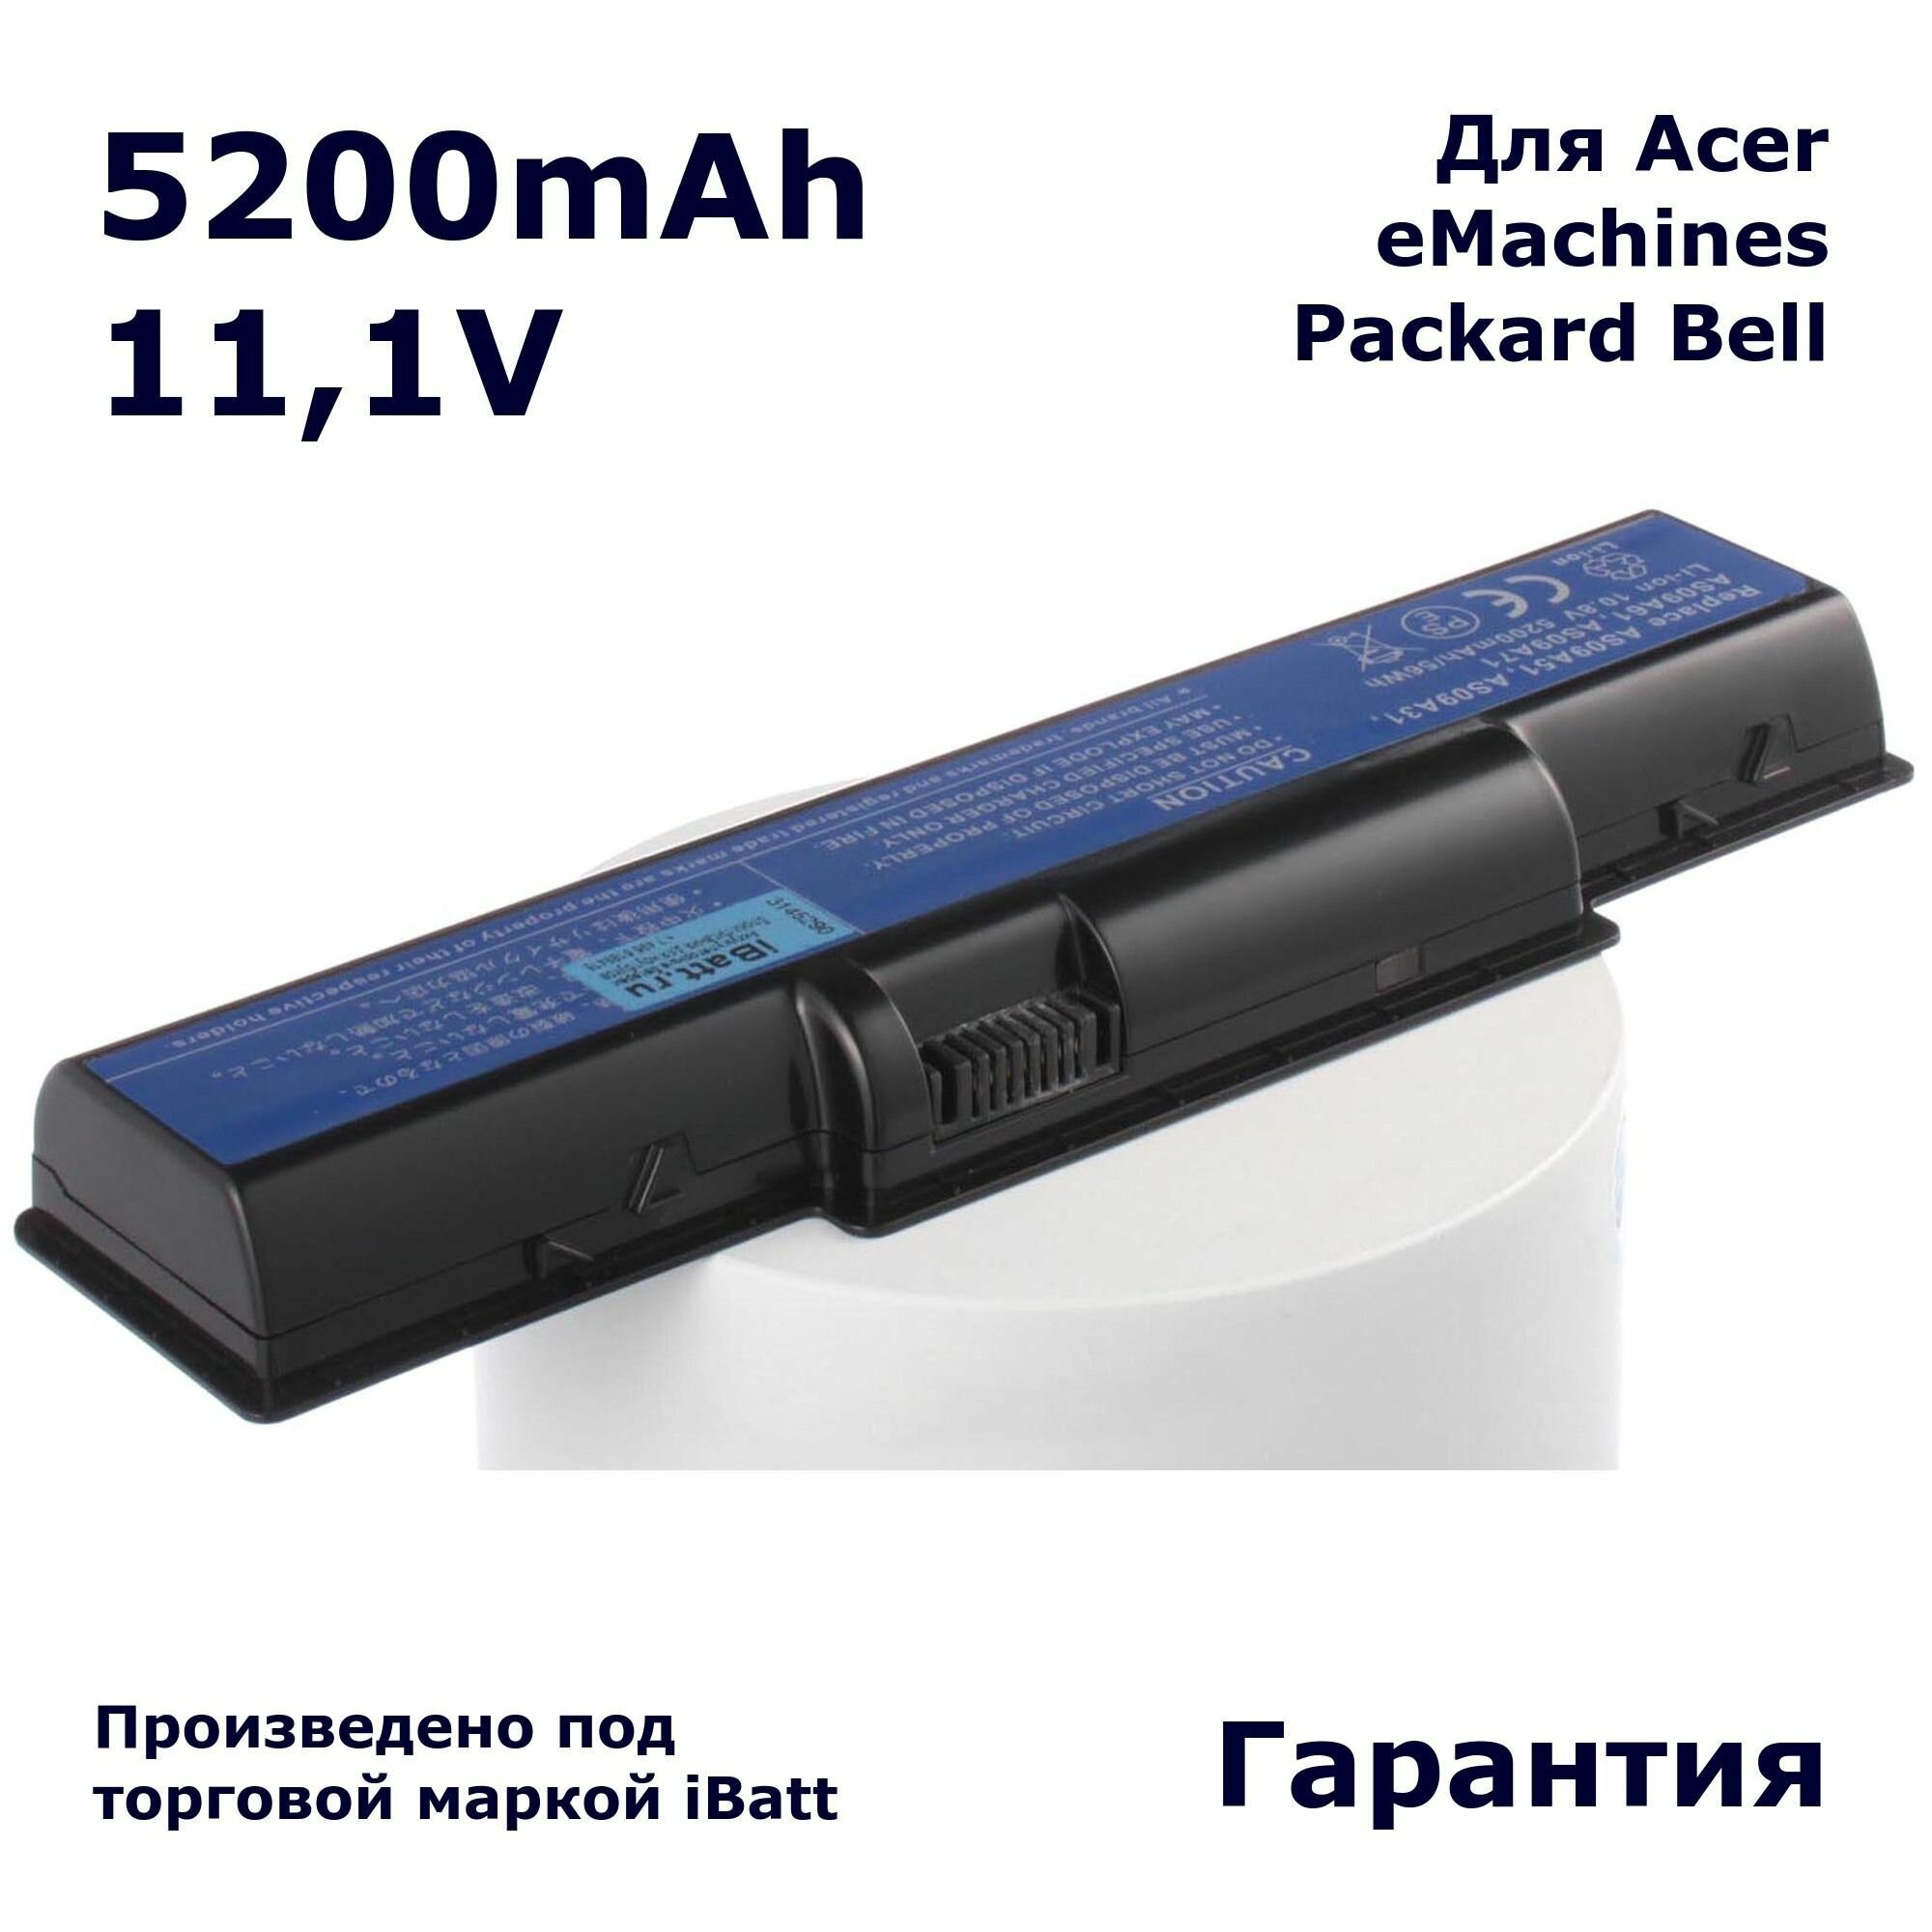 Аккумулятор iBatt 5200mAh, для AS09A31 AS09A41 AS09A61 AS09A75 AS09A51 AS09A71 CL1523B.806 AS09A73 AS09A70 AS09A78